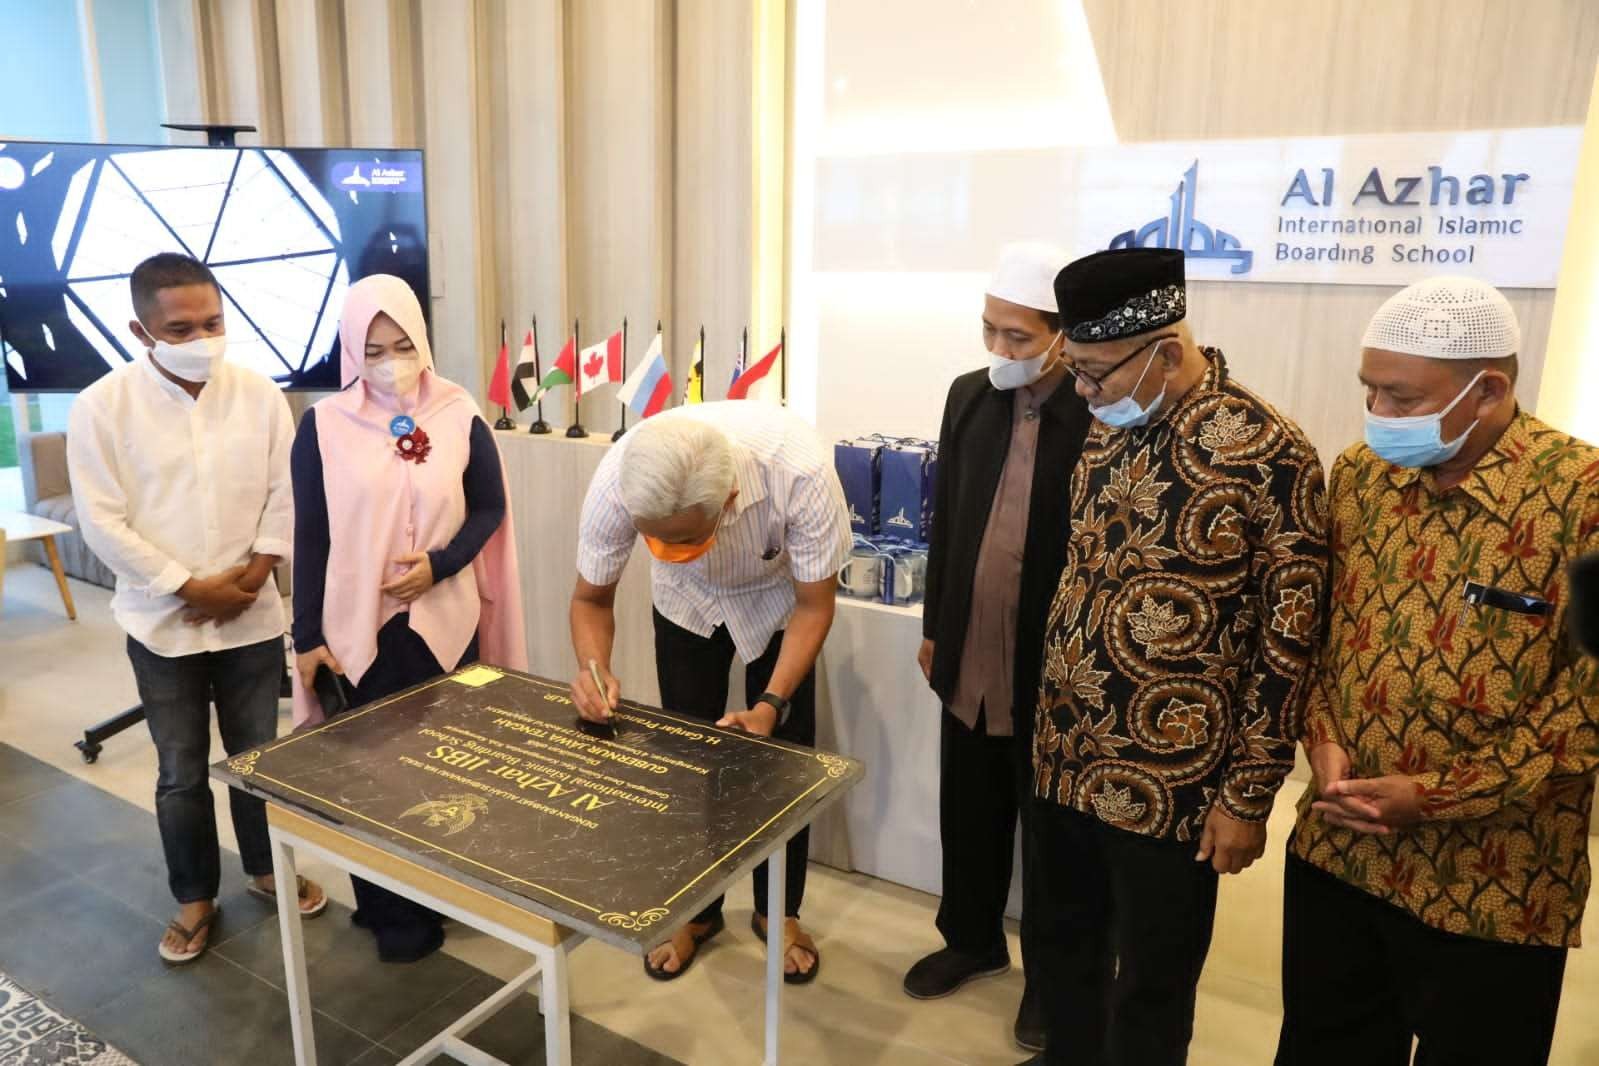 Gubernur Jawa Tengah, Ganjar Pranowo meresmikan sekolah bertaraf internasional, Al-Azhar International Islamic Boarding School di Tawangmangu. (Foto: Istimewa)